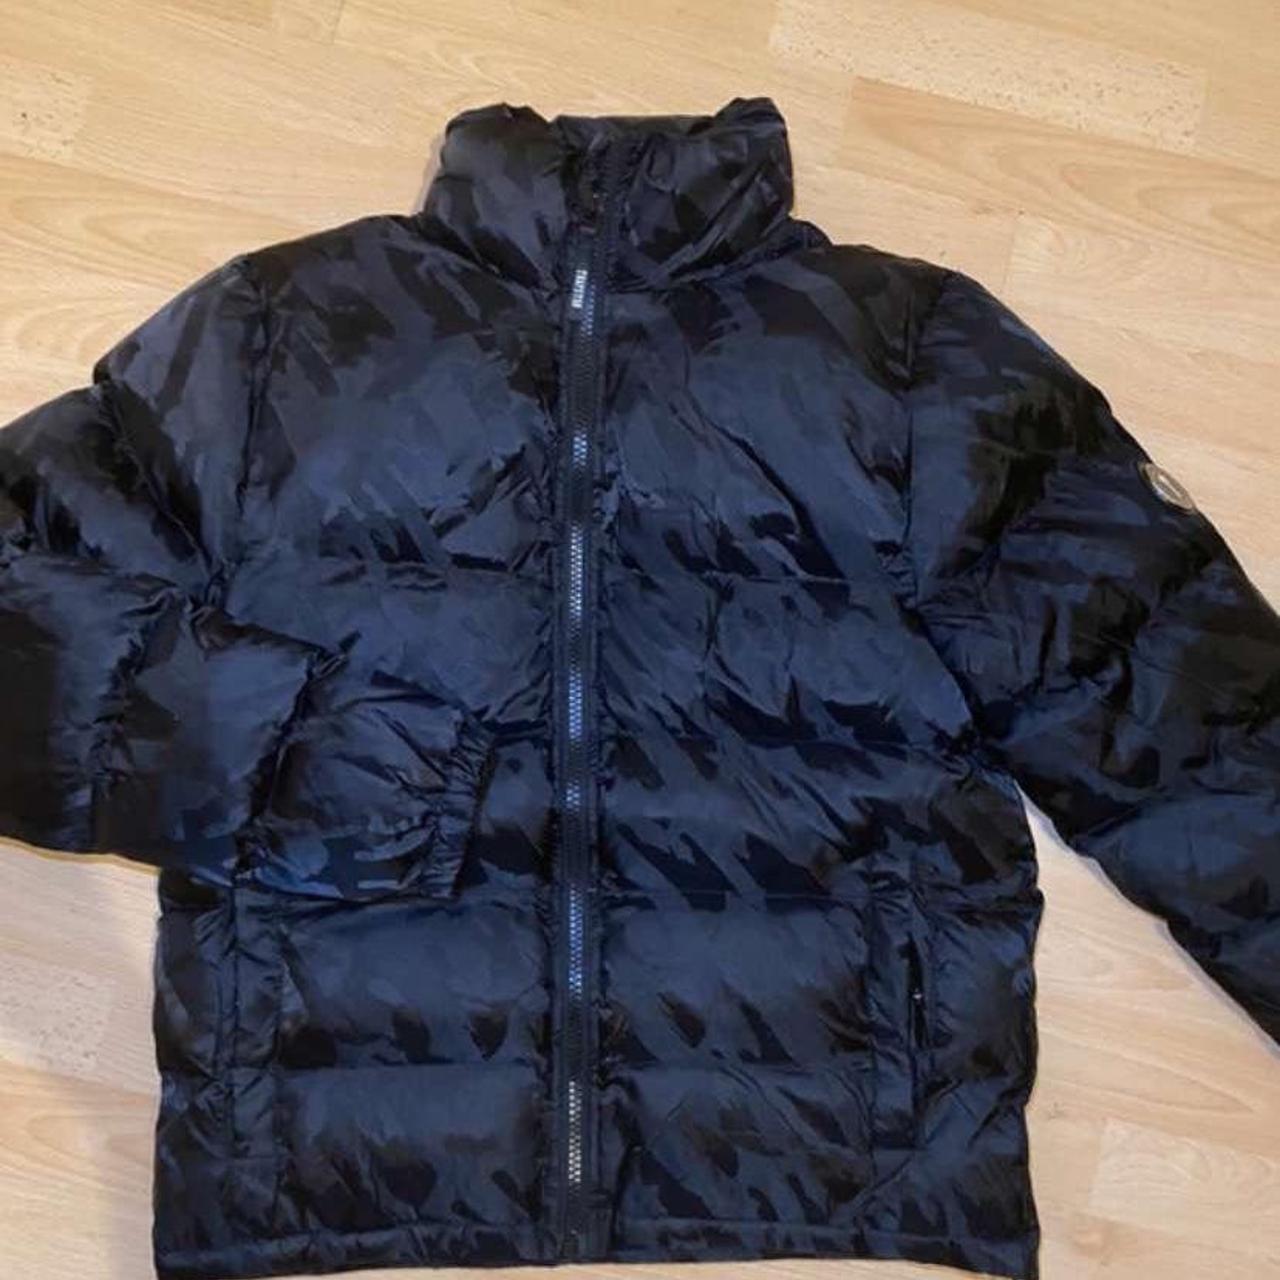 Men’s black trapstar jacquard coat Authentic - Depop